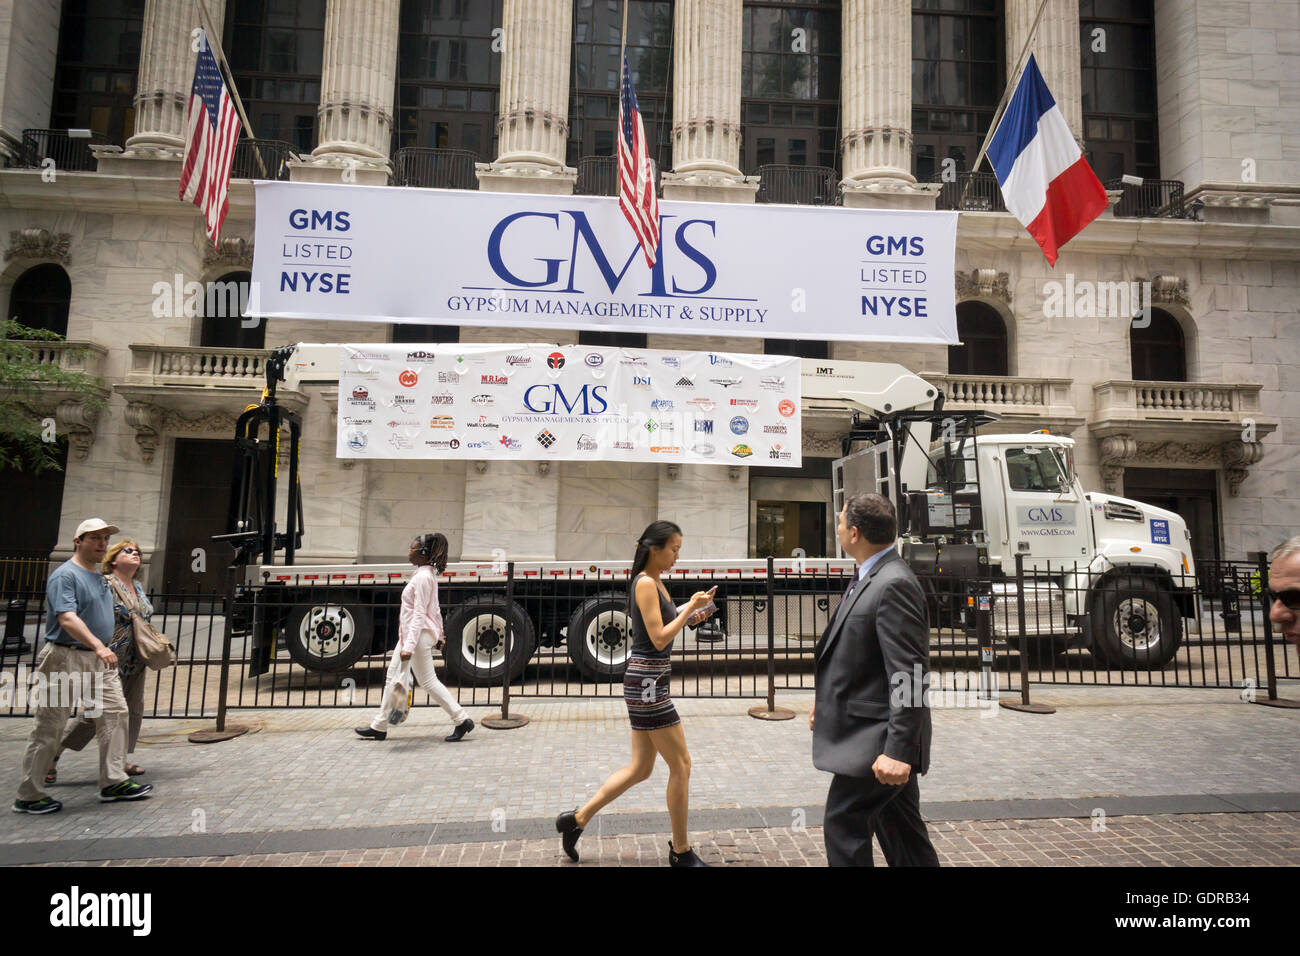 La Bourse de New York est décoré pour le gypse Management & Supply (GMS) le lundi 18 juillet 2016. (© Richard B. Levine) Banque D'Images